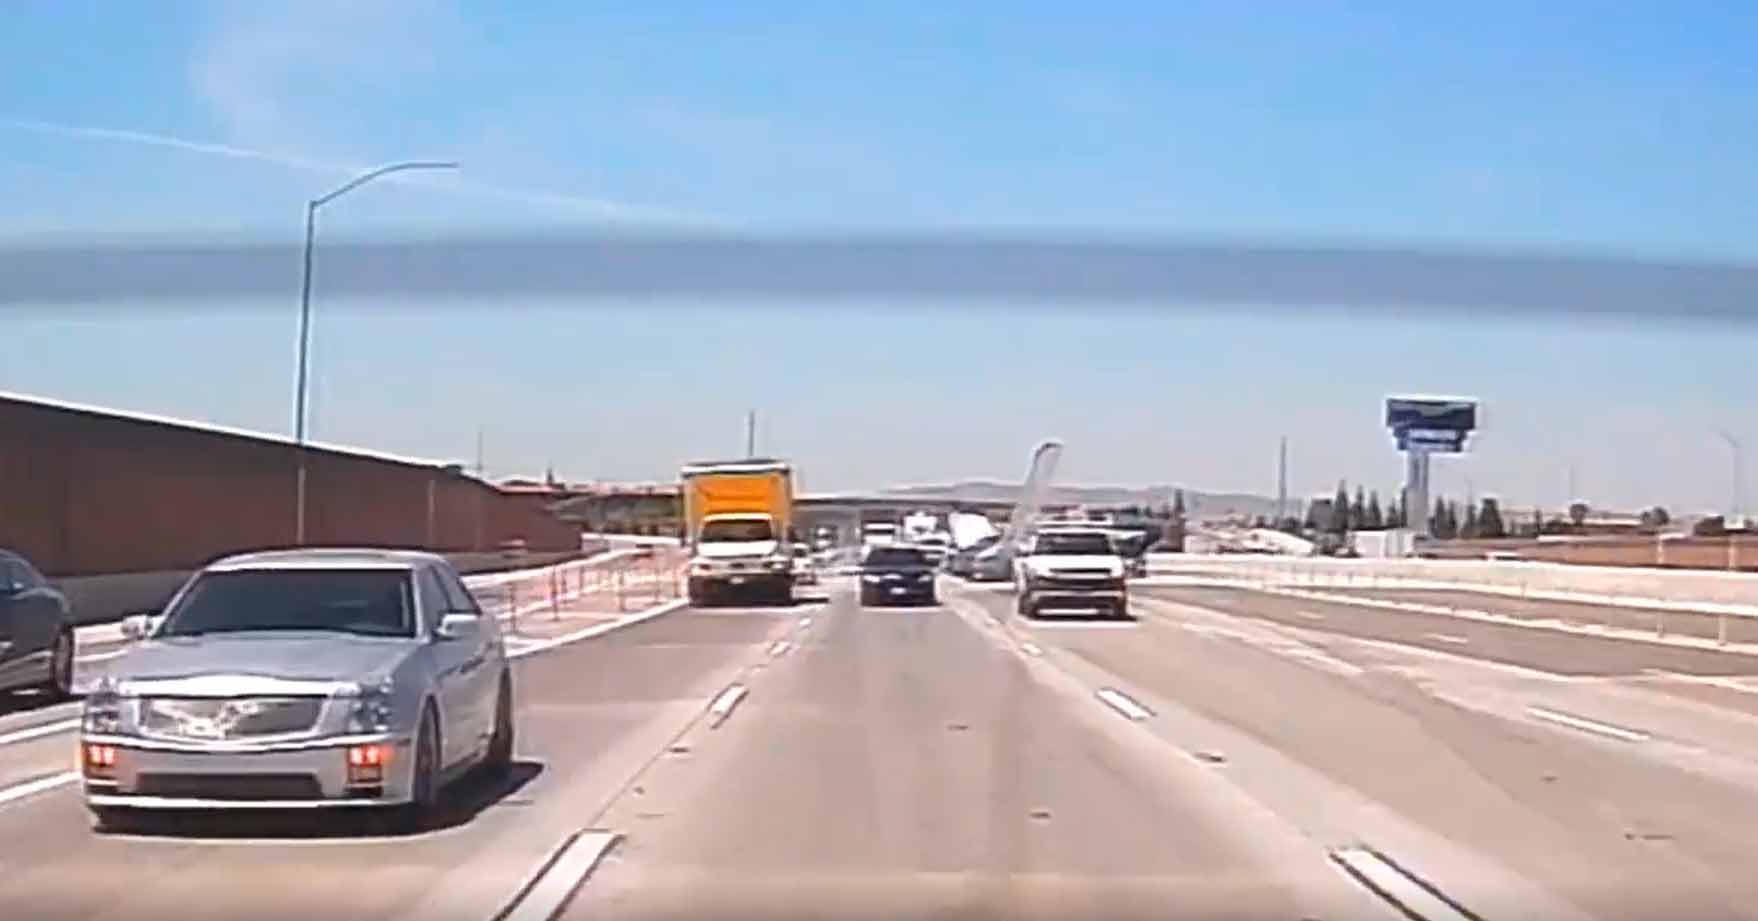 Vídeo: Avião de pega fogo após colidir com caminhão em rodovia. Foto: Reprodução redes sociais